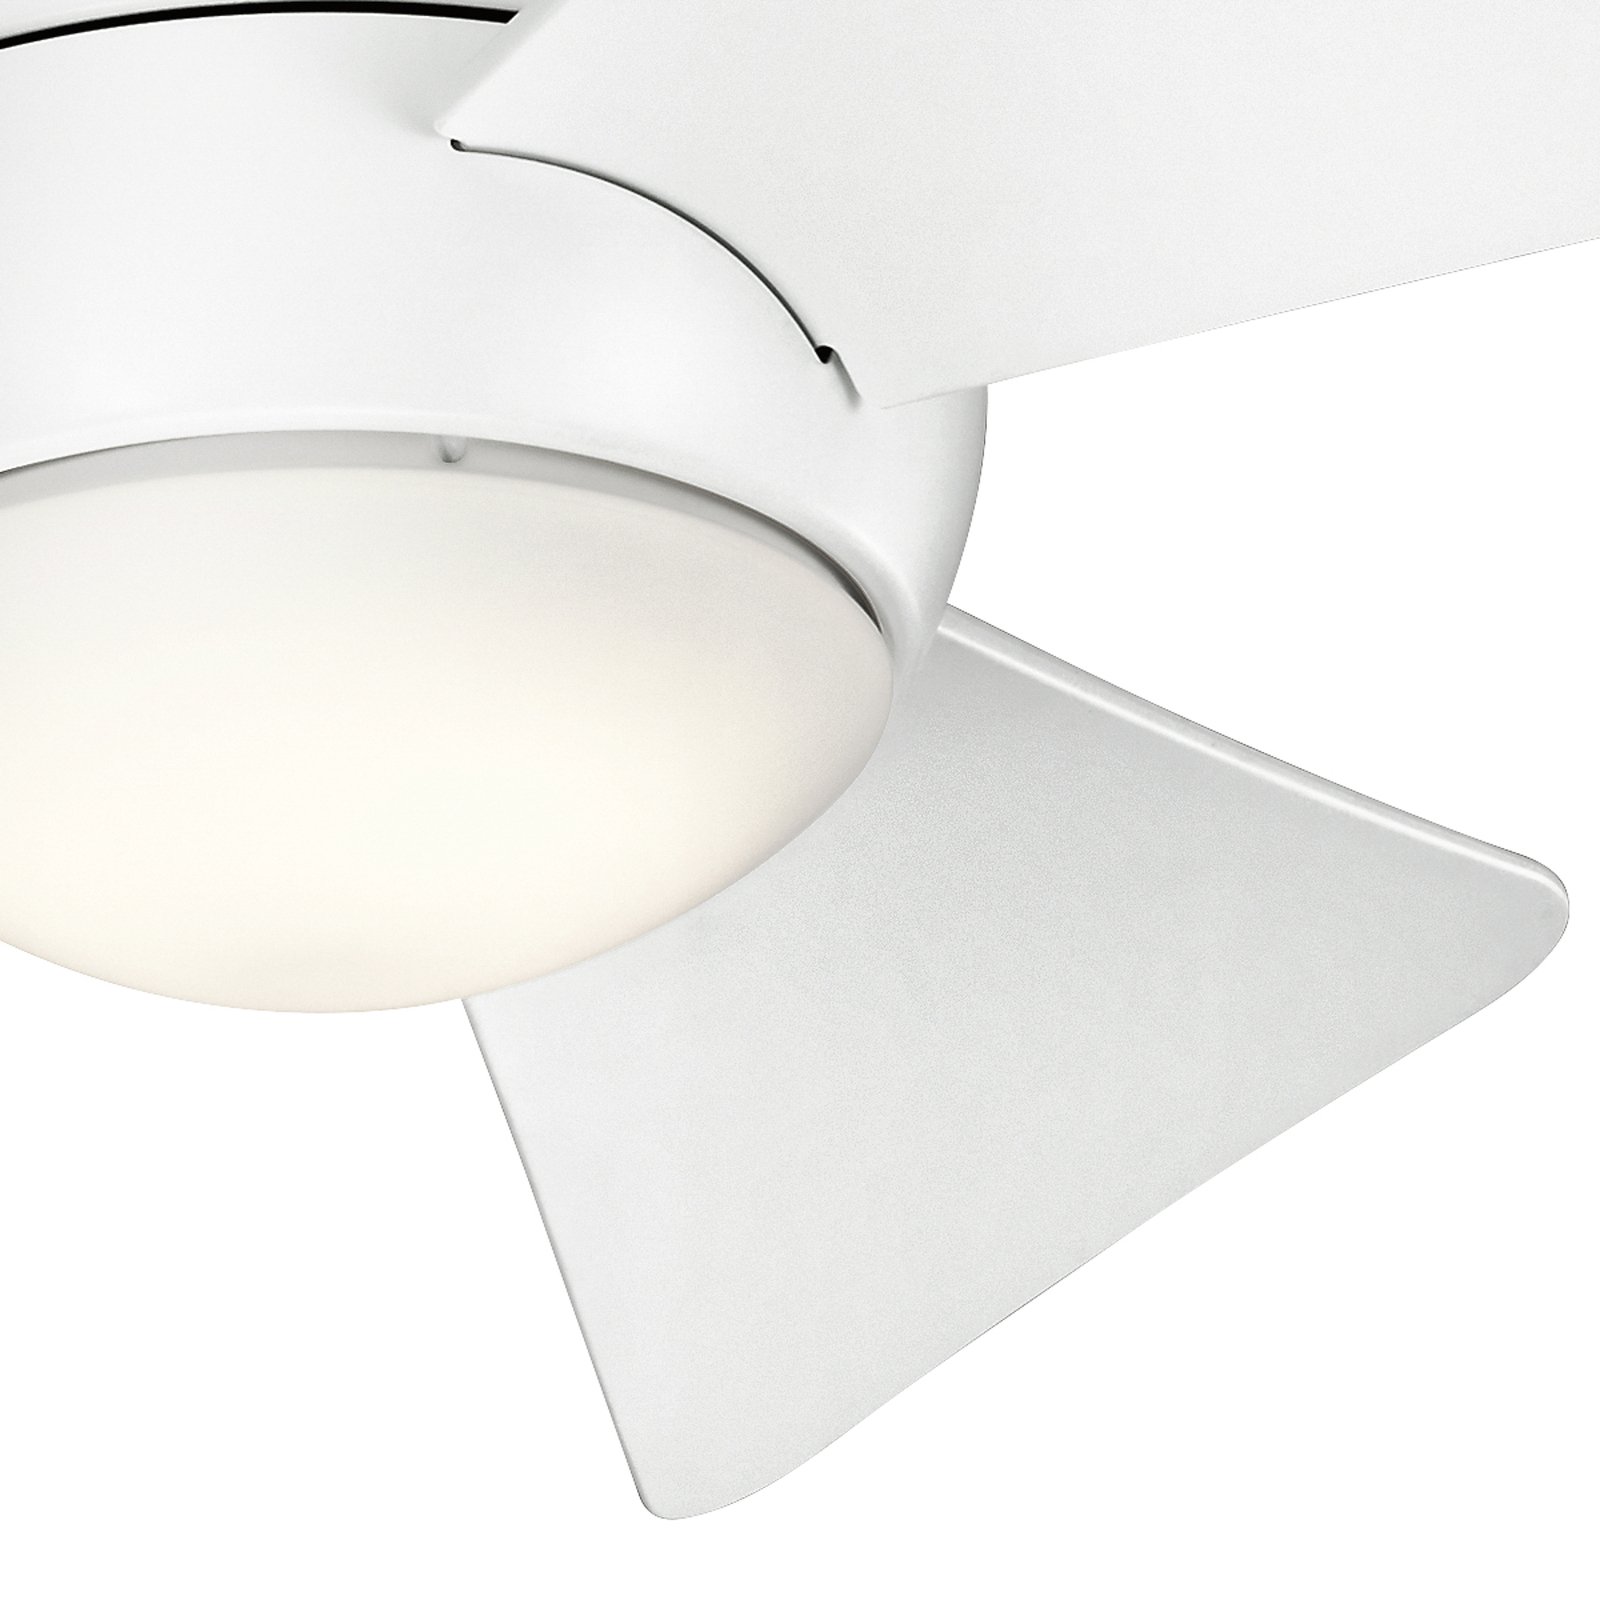 Sola LED ceiling fan, IP23 matt white